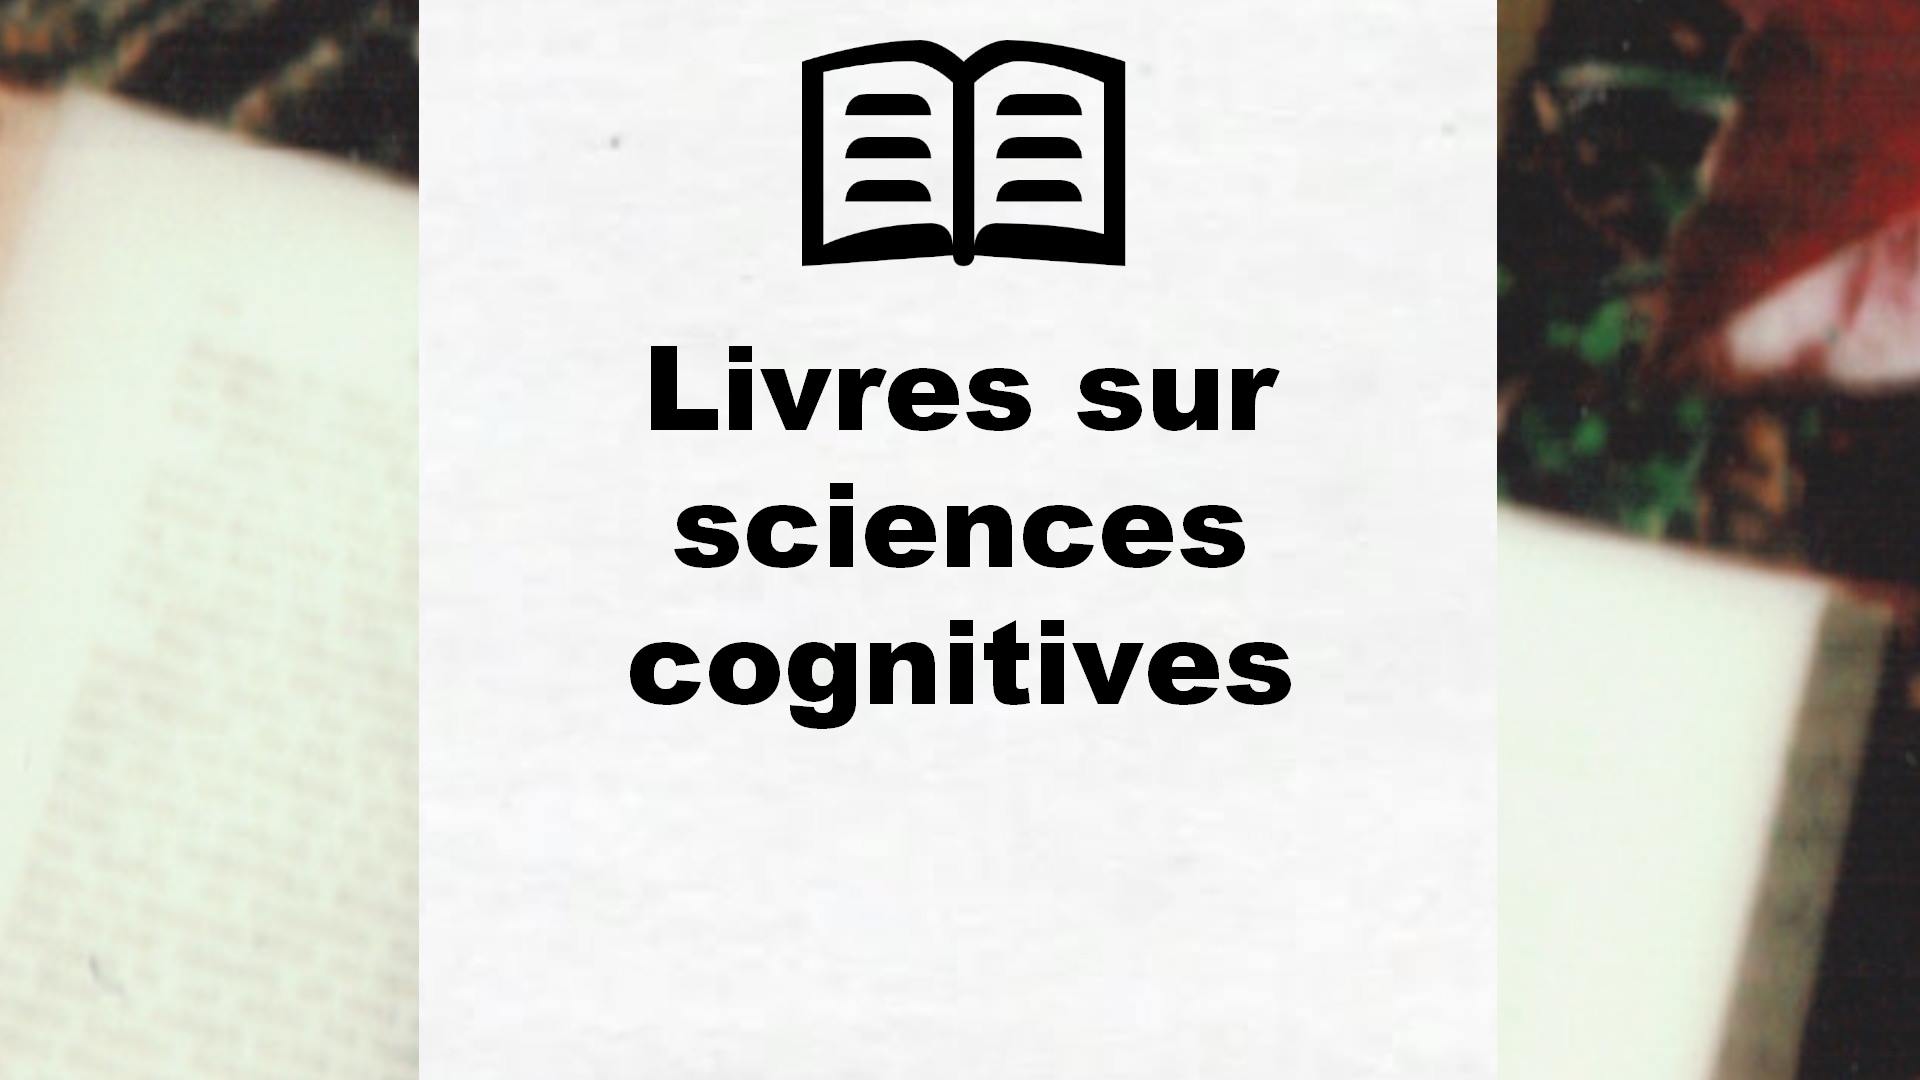 Livres sur sciences cognitives